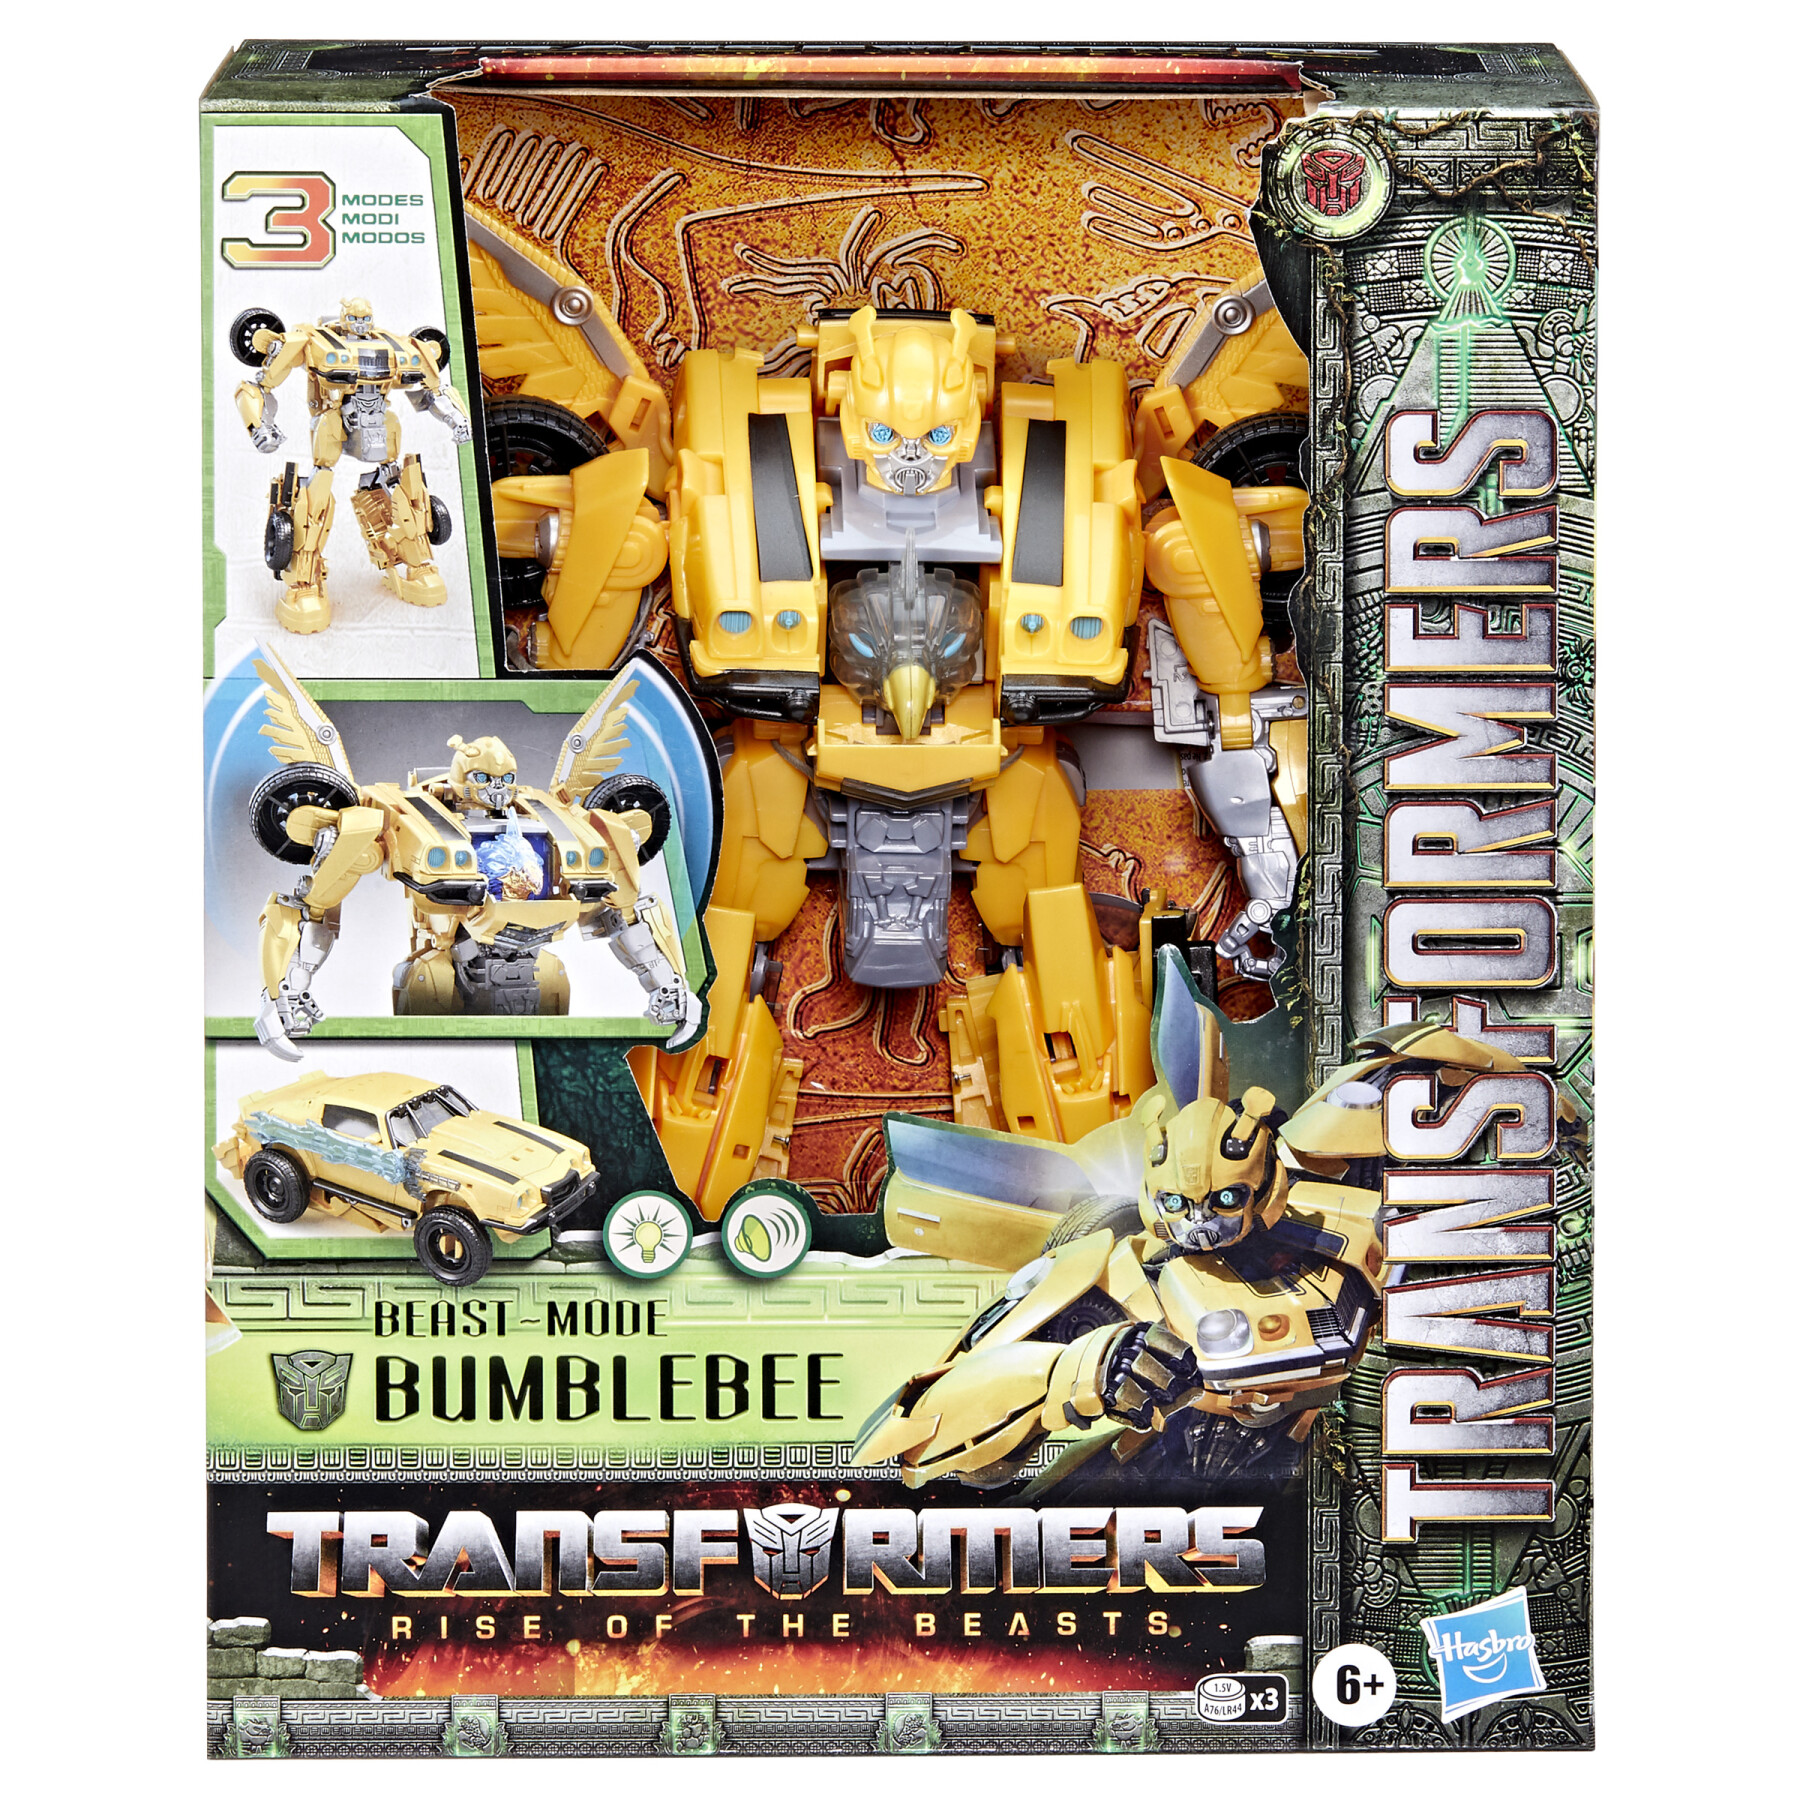 Transformers, bumblebee modalità animale ispirato al film "transformers: il risveglio", dai 6 anni in su, in scala da 25 cm - Transformers